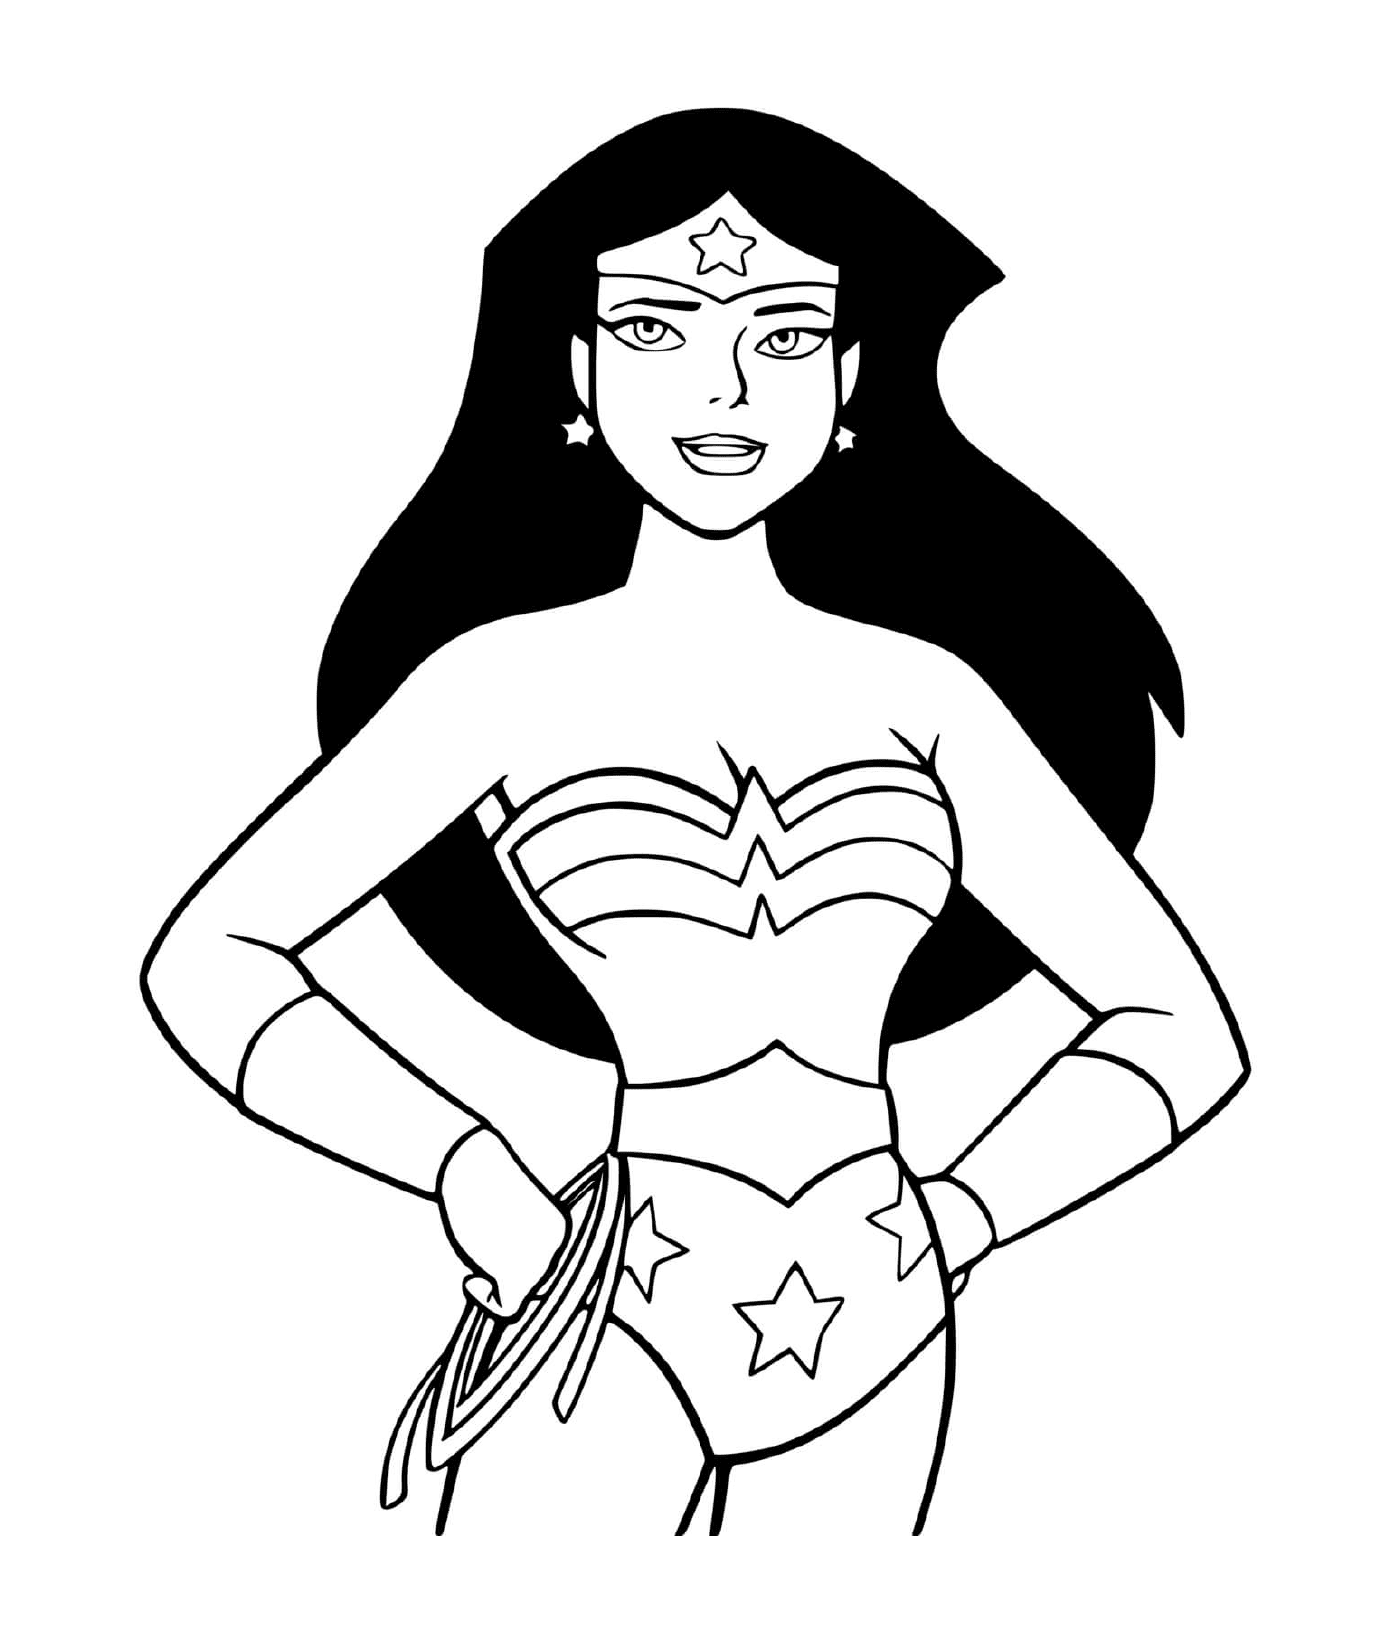 coloriage Super heroine wonder woman cartoon dessin anime enfant dc comics